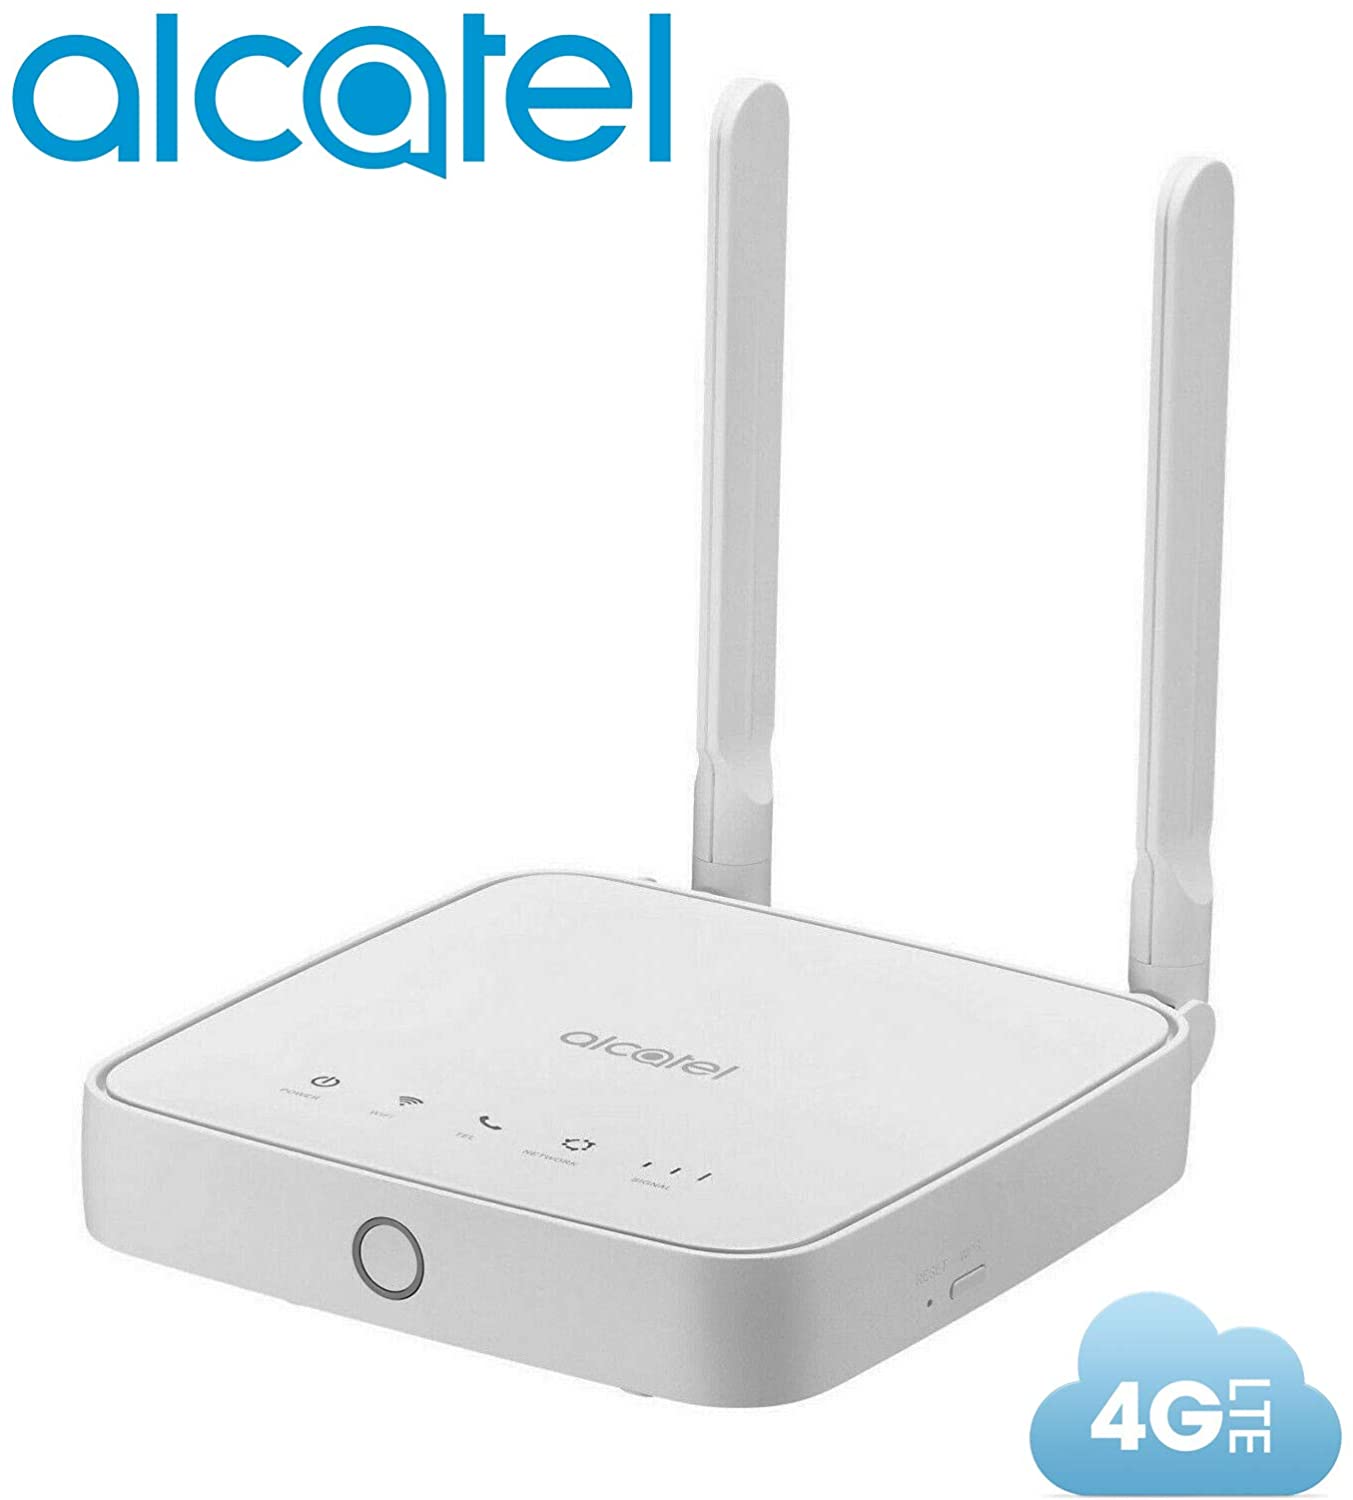 Router Alcatel Link Hub 4G LTE desbloqueado en todo el mundo HH41NH Multibam 150 Mbps Wi-Fi (4G LTE Estados Unidos, Caribe Latino, Europa, África) + RJ45 hasta 32 usuarios HH41NH-2BTGMXA-1